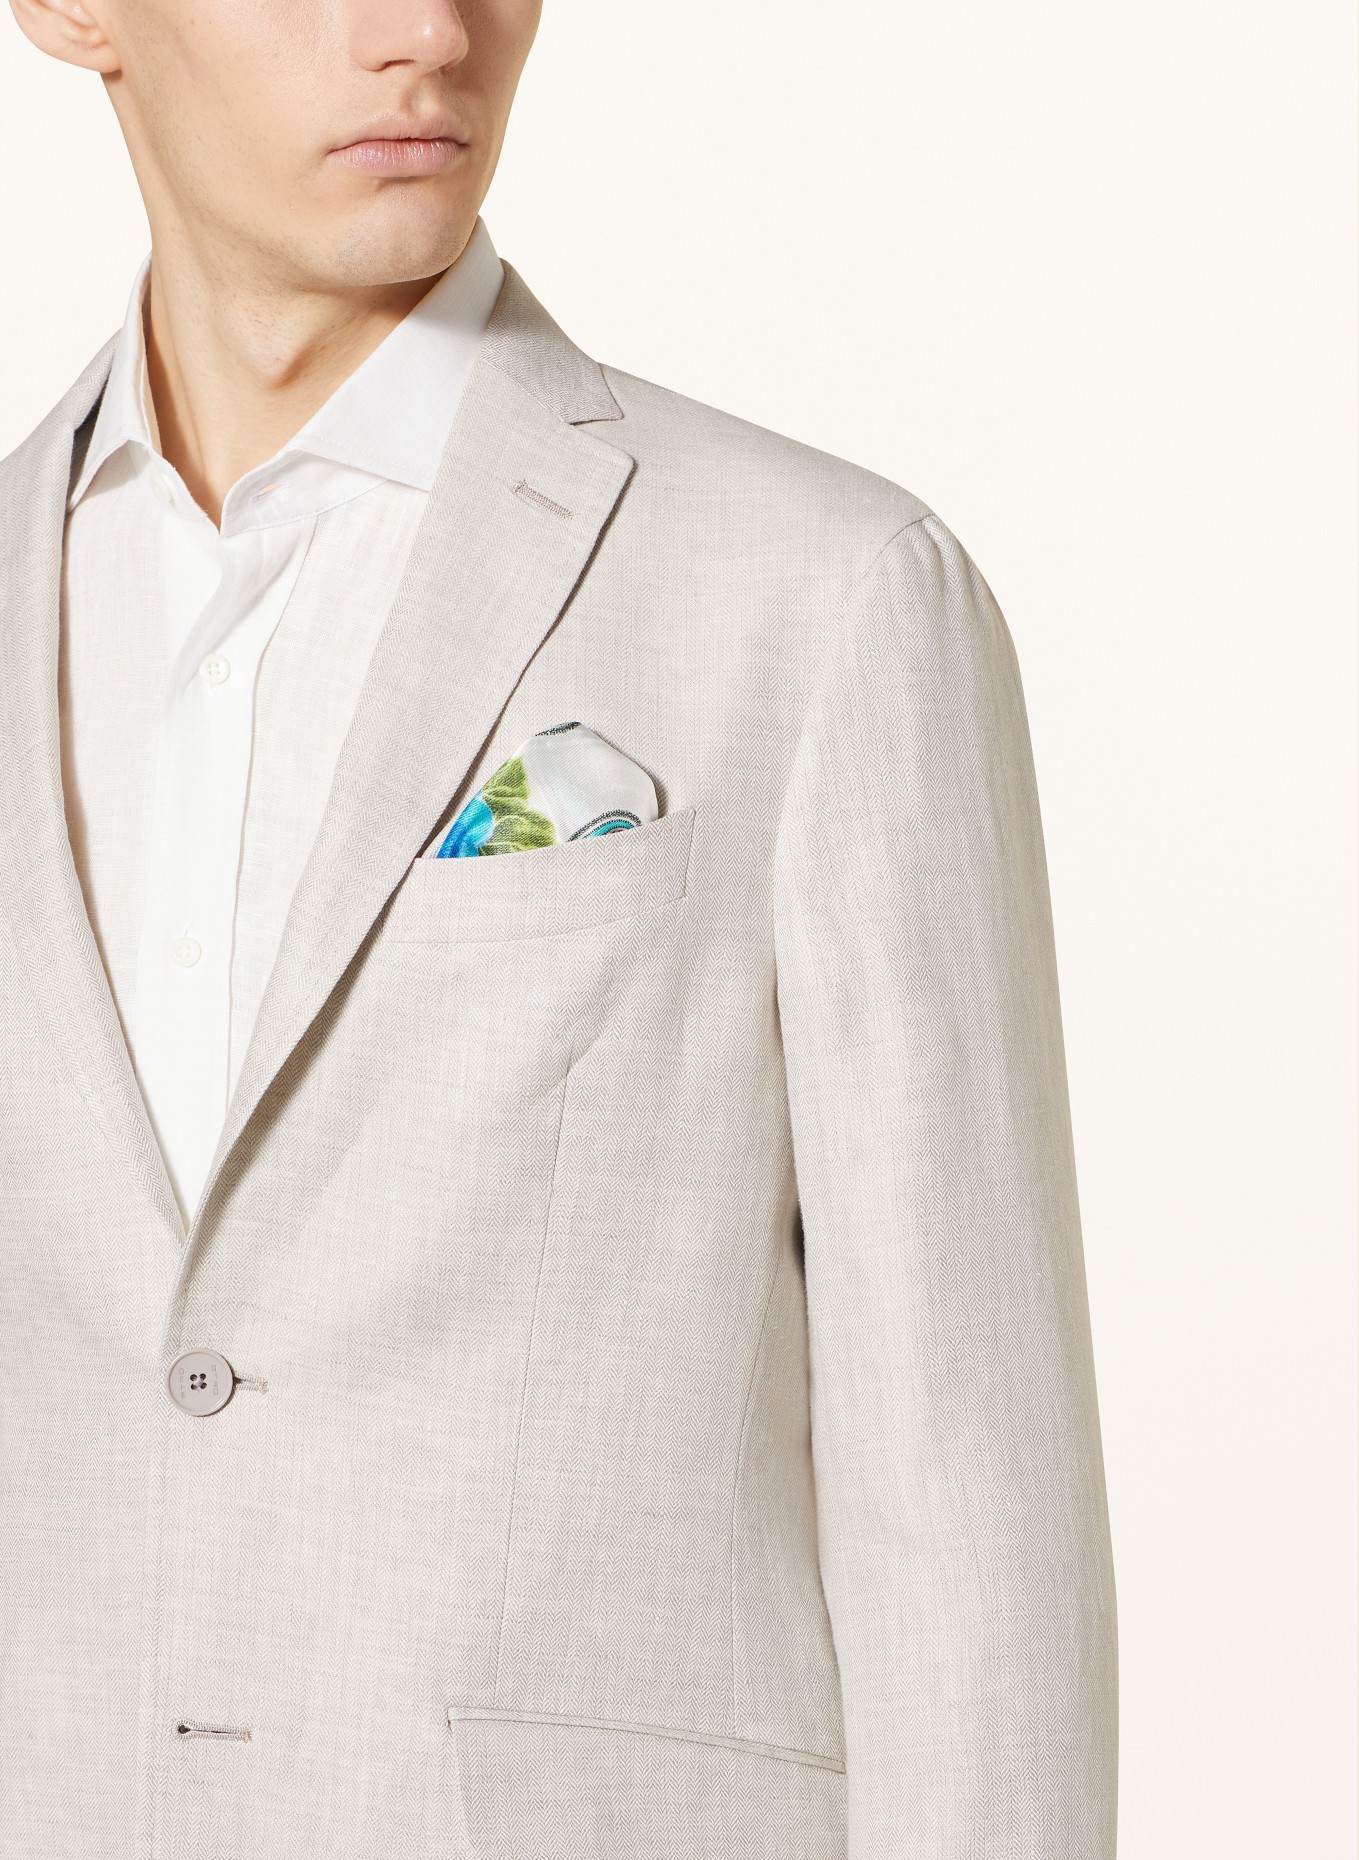 ETRO Suit jacket slim fit in linen, Color: M0633 Light Beige (Image 5)